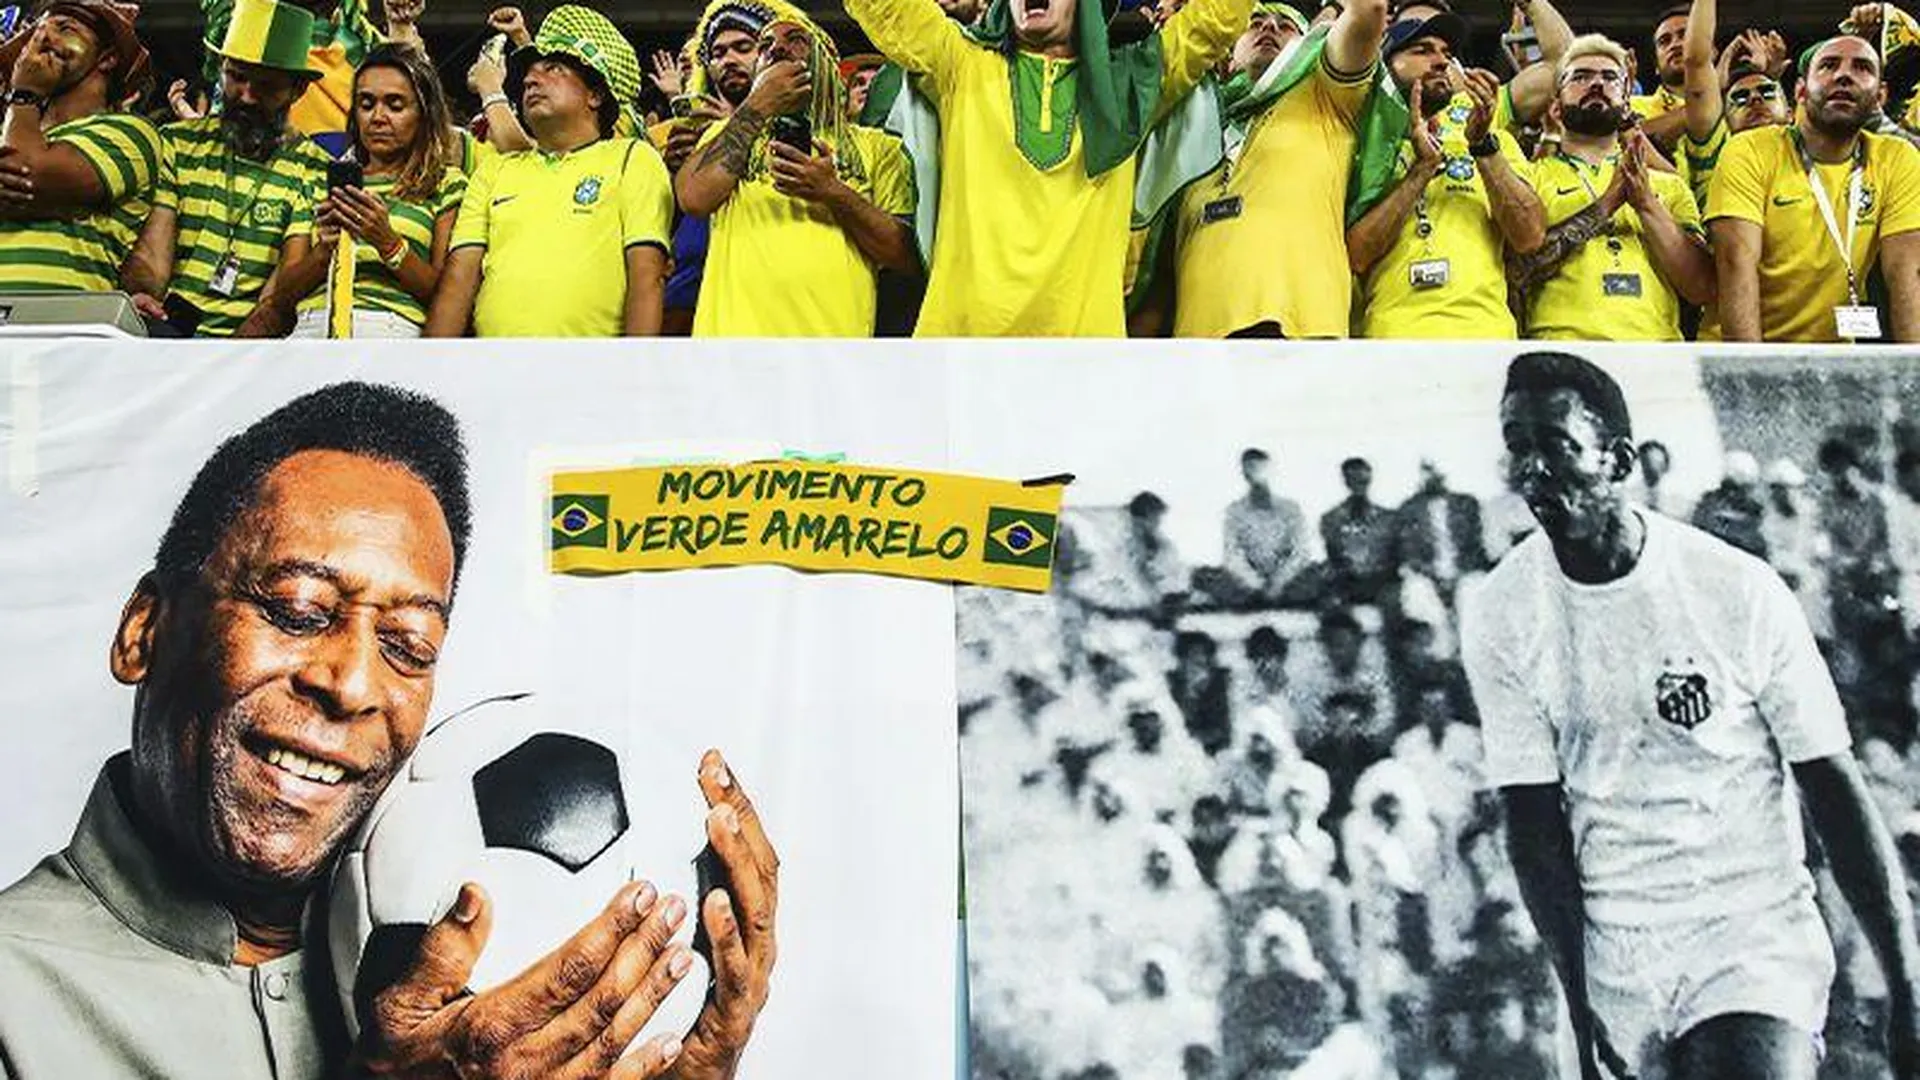 Бразильцы могут посвятить Пеле свою победу на чемпионате мира